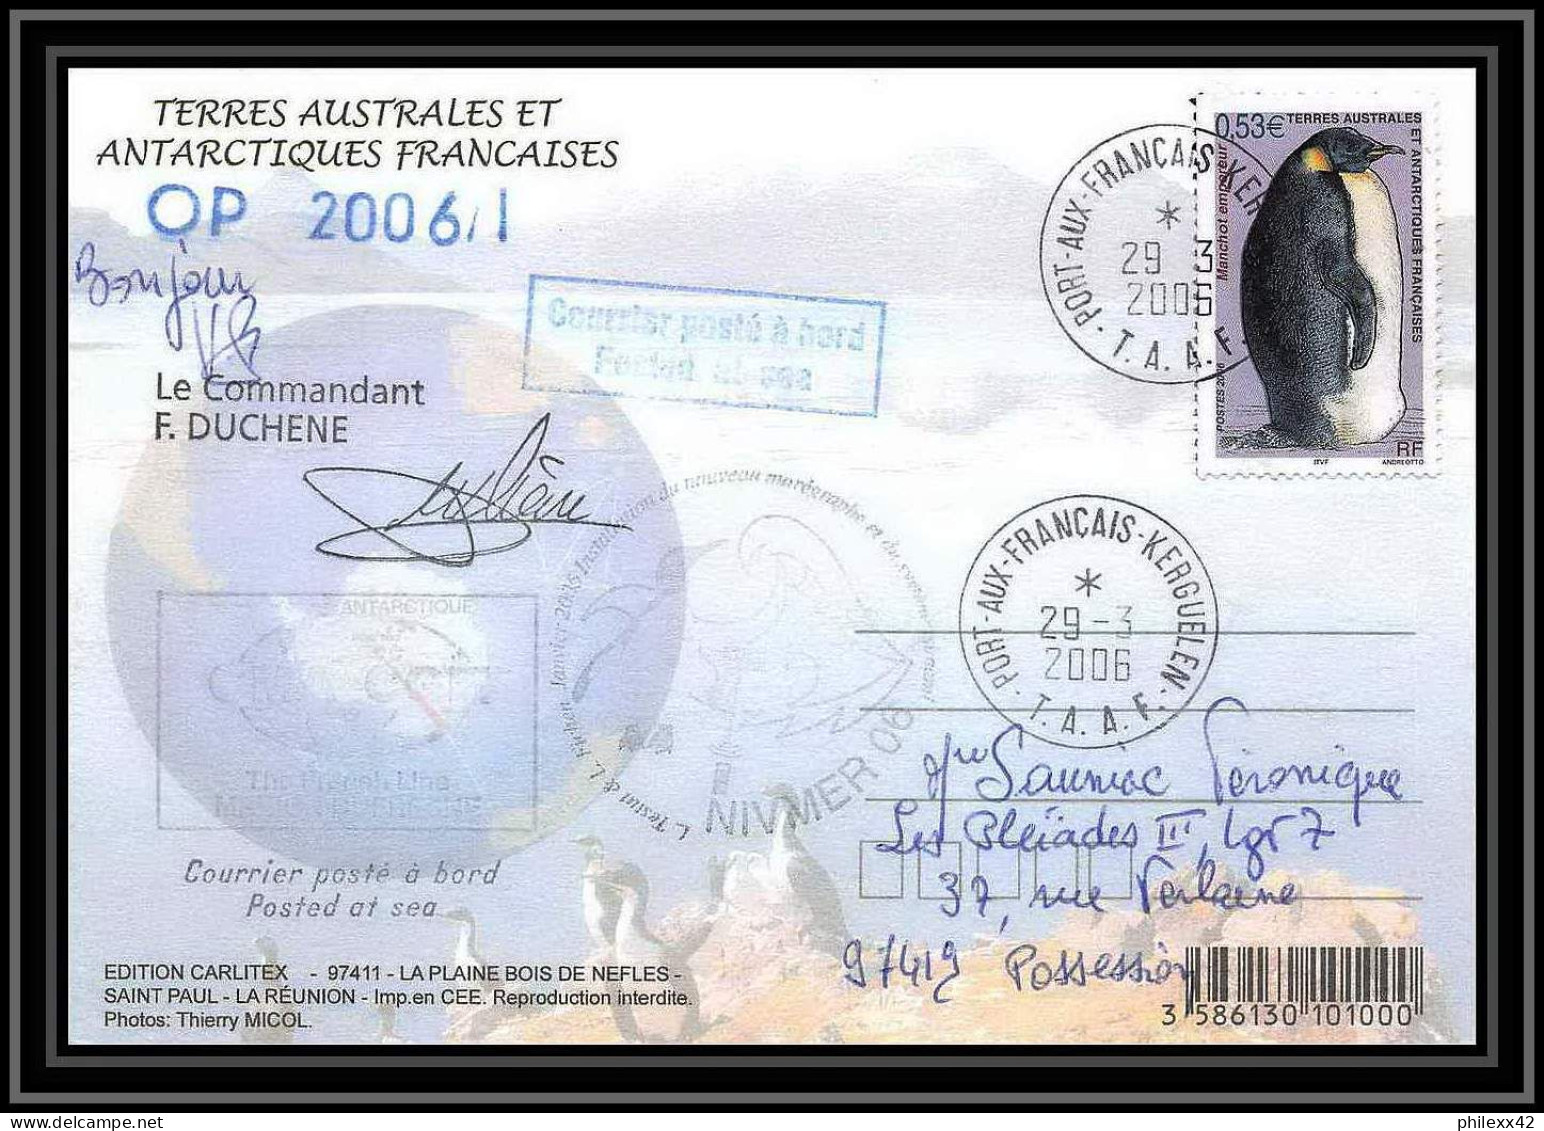 2634 ANTARCTIC Terres Australes (taaf)-carte Postale Dufresne 2 Signé Signed OP 2006/1 N°445 29/3/2006 - Briefe U. Dokumente